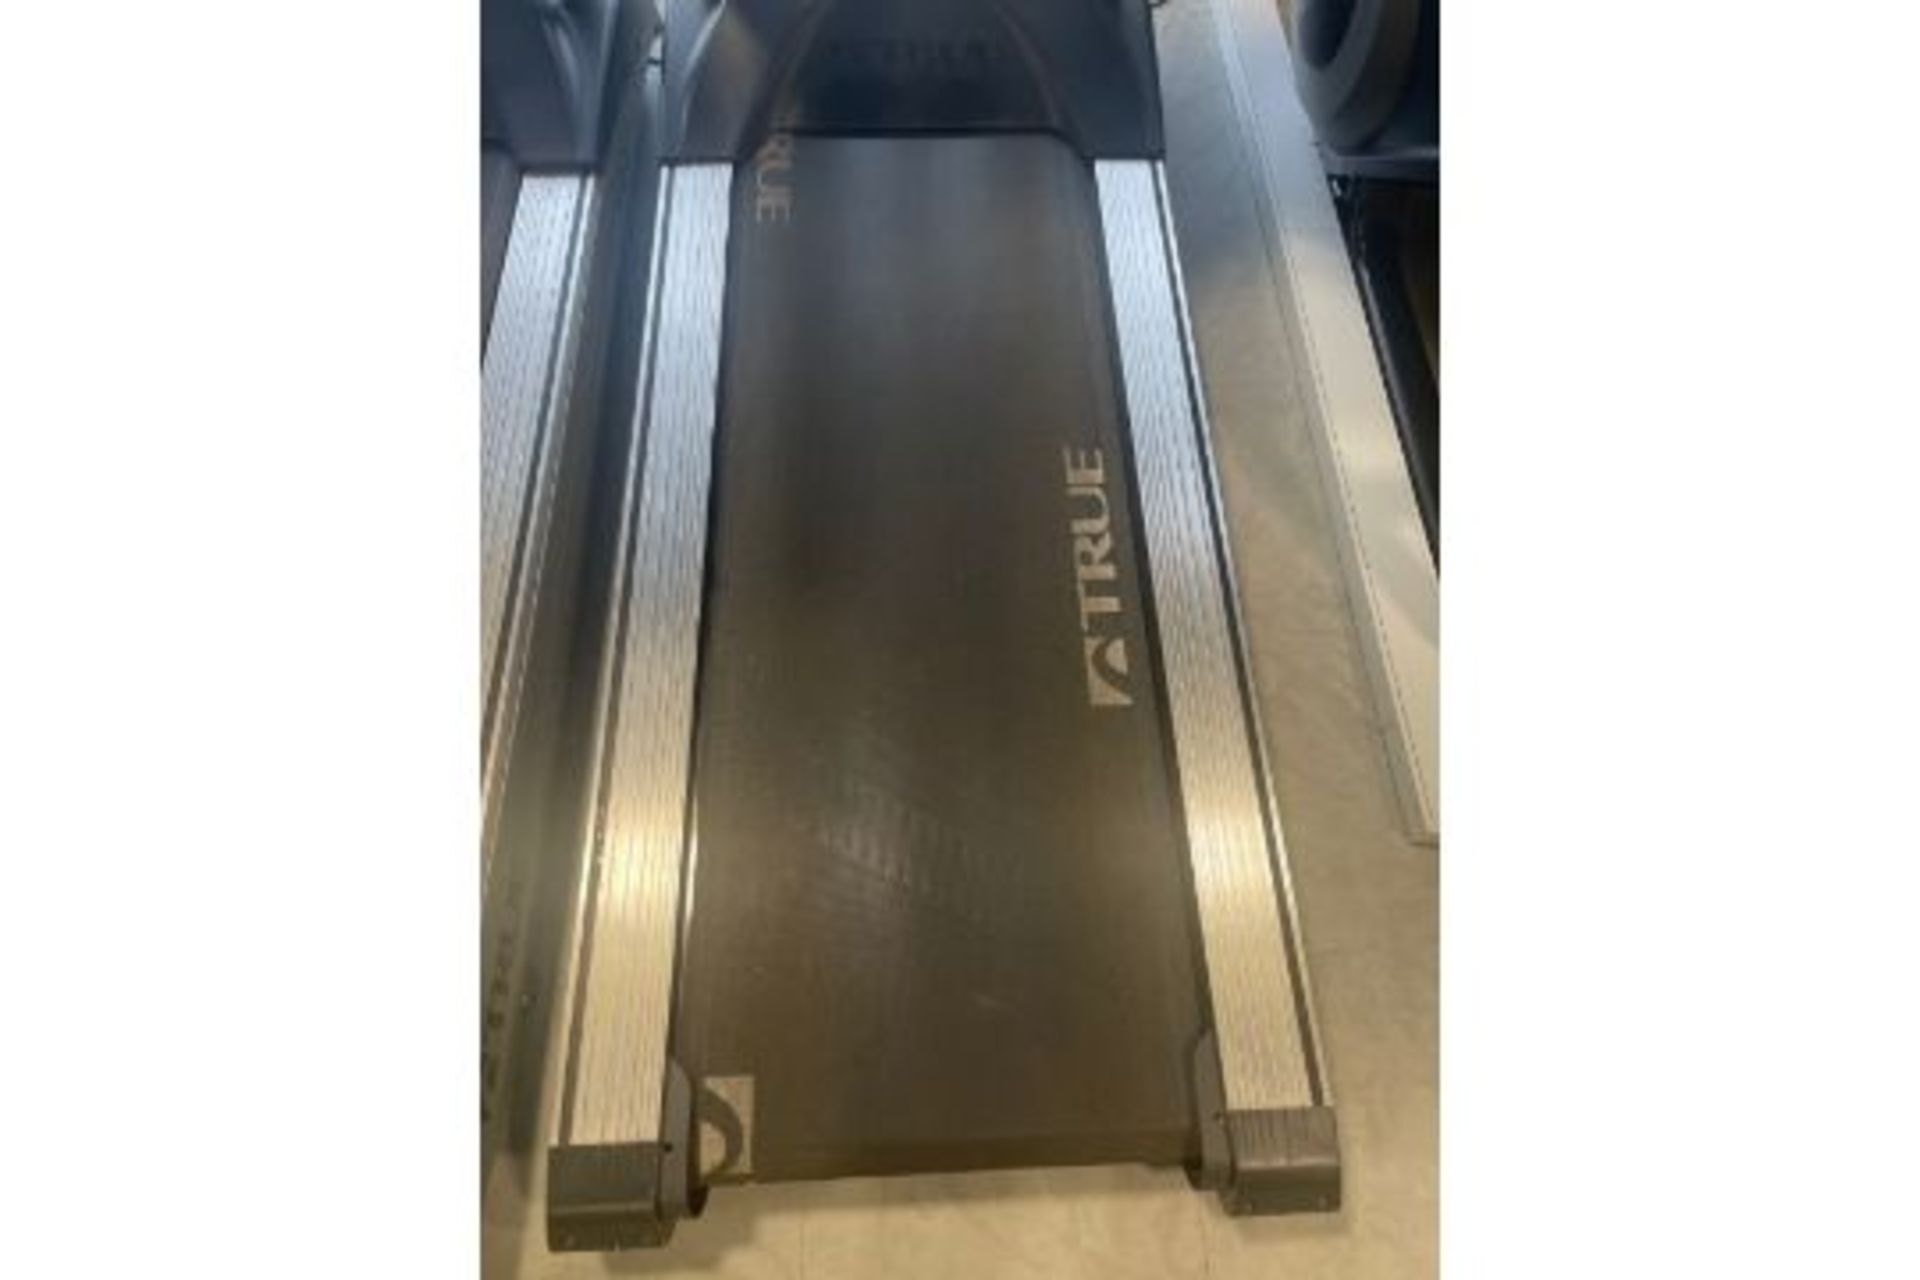 True Fitness 650 Treadmill - Image 4 of 5